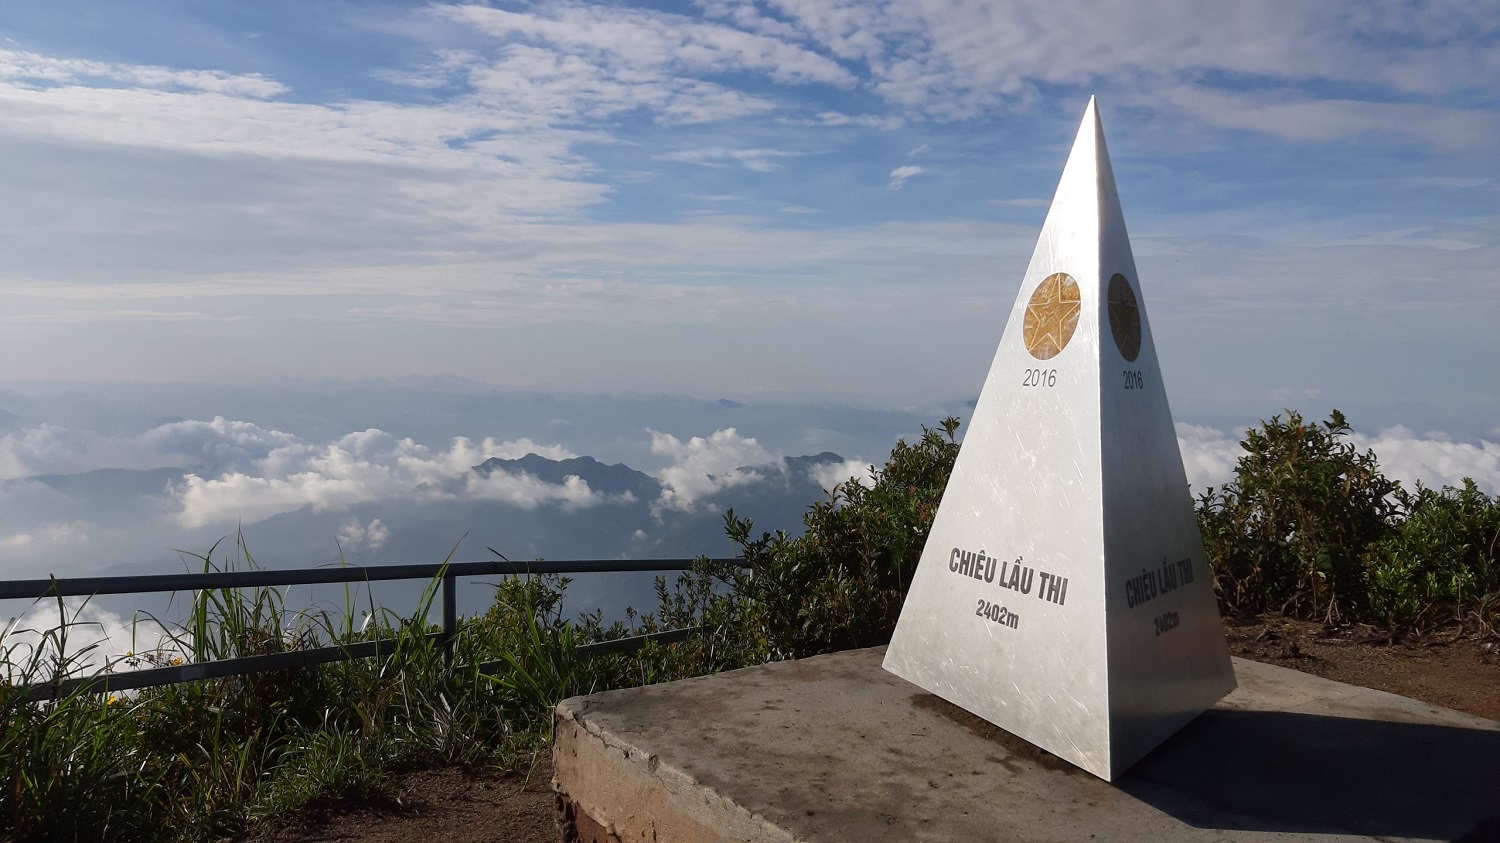 Chiêu Lầu Thi - Điểm săn mây lý tưởng ở Hà Giang